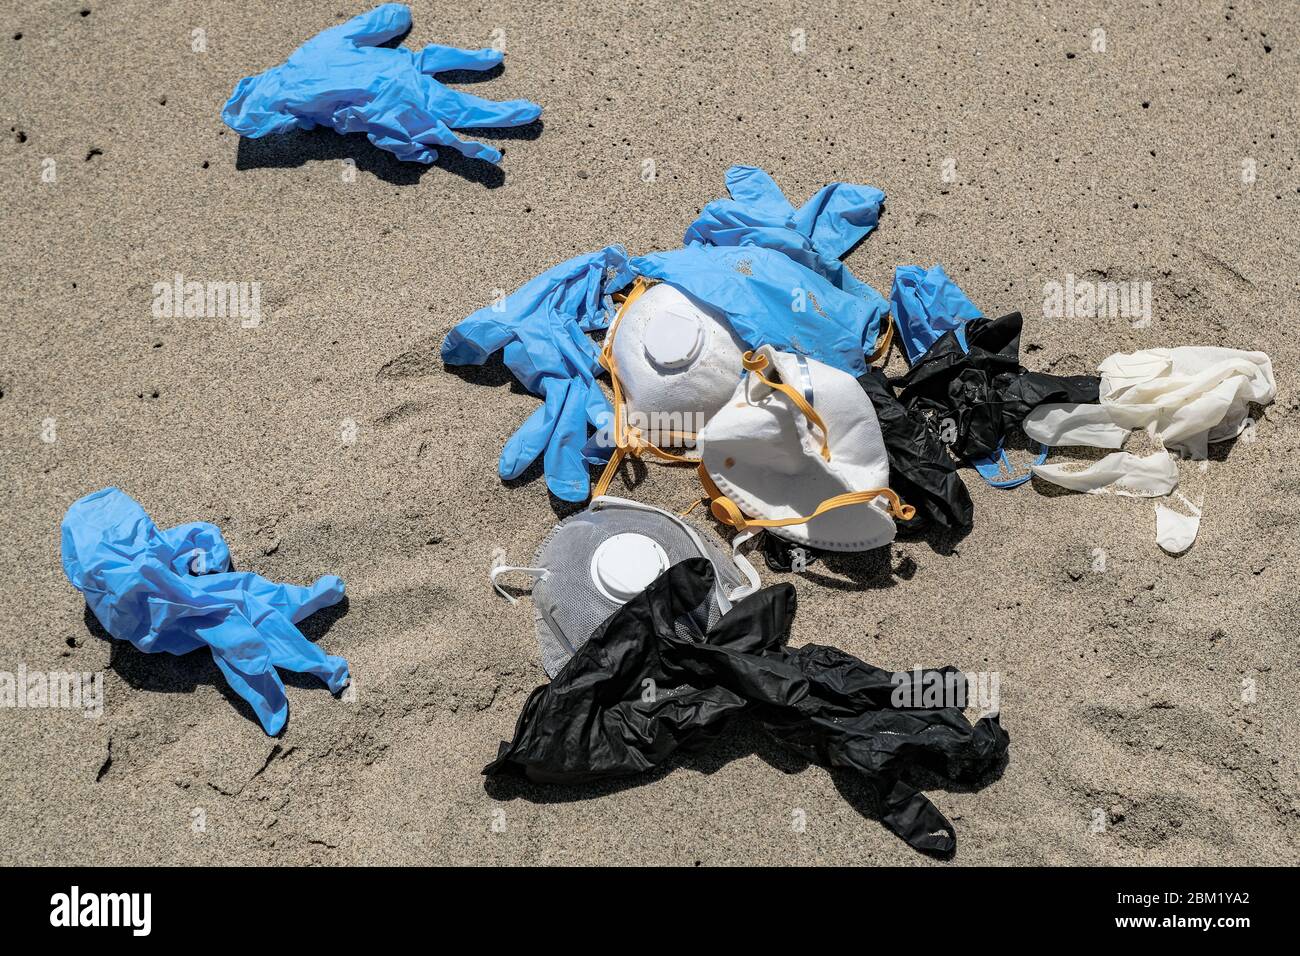 Maschera antivirus protettiva e guanti di plastica spazzatura spazzatura sulla costa sabbiosa del mare, malattia da inquinamento da cocvidi coronavirus Foto Stock